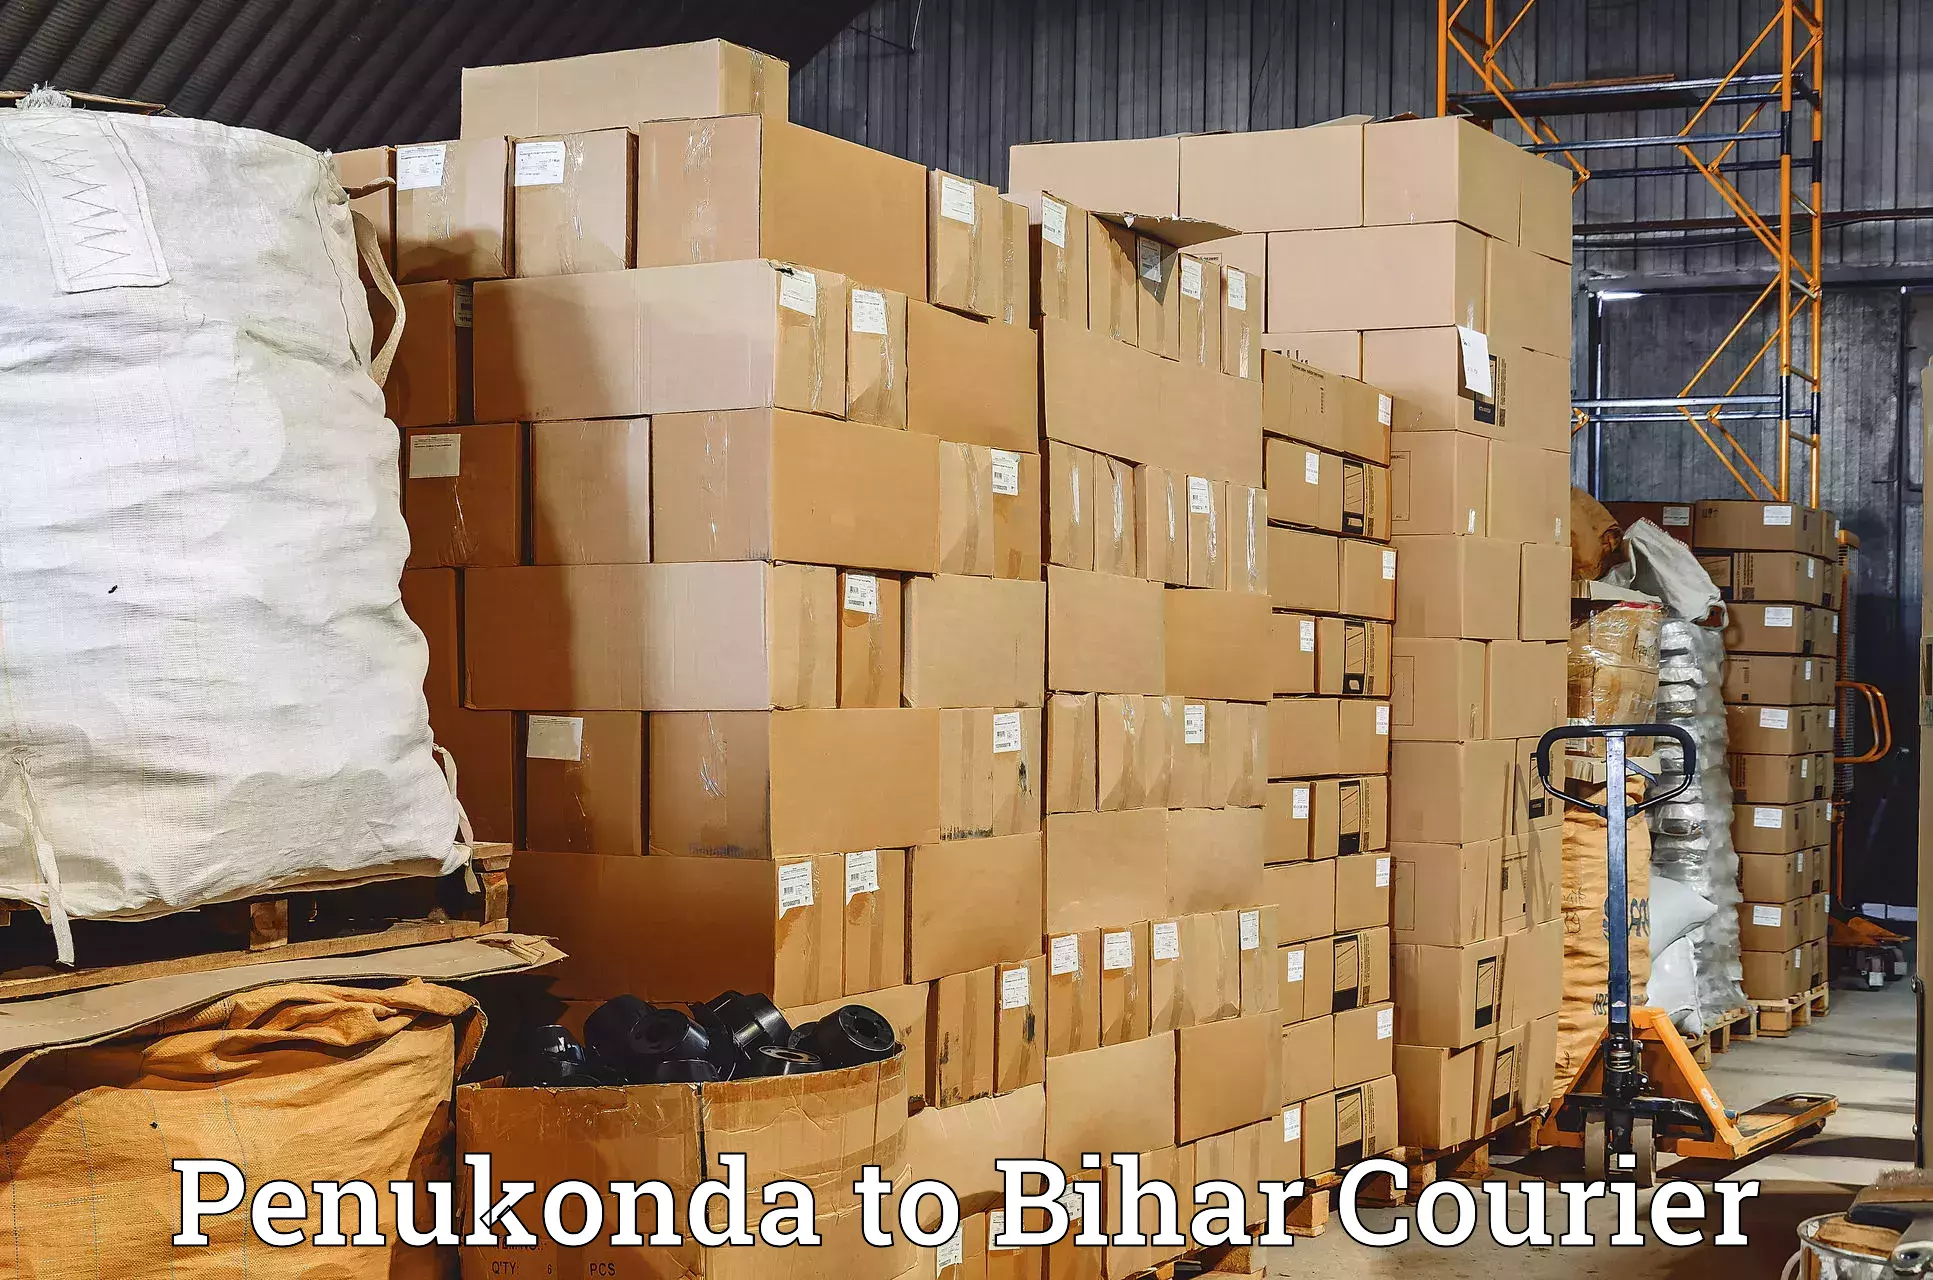 Multi-national courier services Penukonda to Katoria